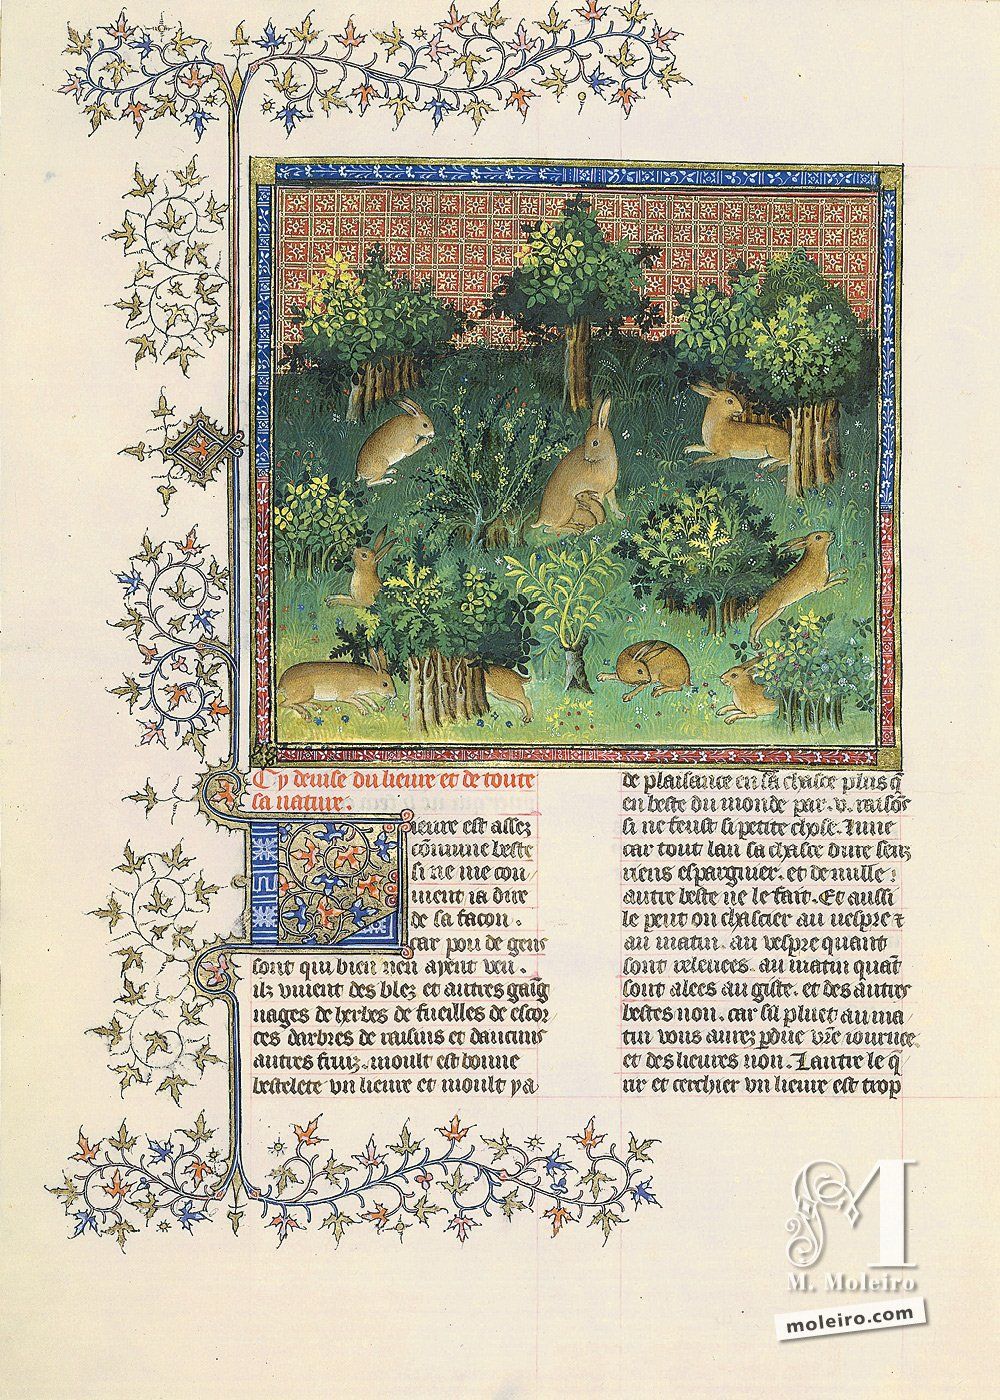 Of the hare and its nature - 24v. Livre de la Chasse, by Gaston Fébus (Français 616, Paris, early 15th c.) Bibliothèque nationale de France, Paris BnF